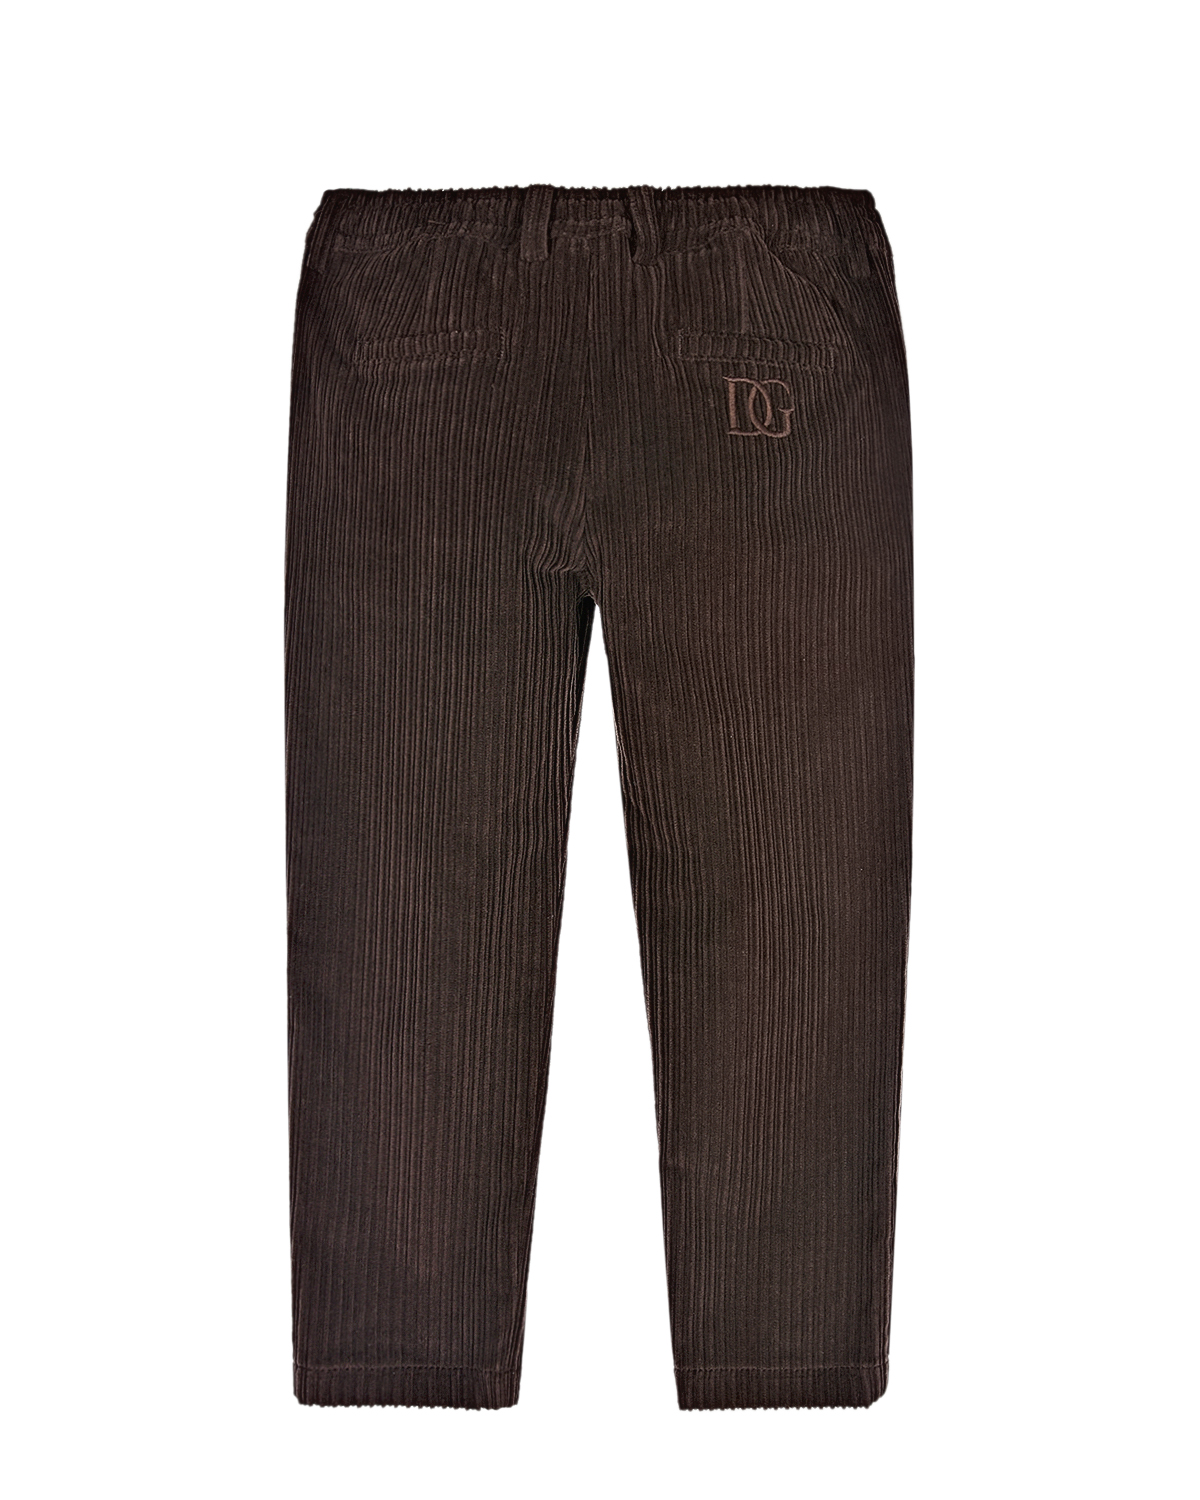 Вельветовые брюки с поясом на кулиске Dolce&Gabbana детские, размер 98, цвет коричневый - фото 2